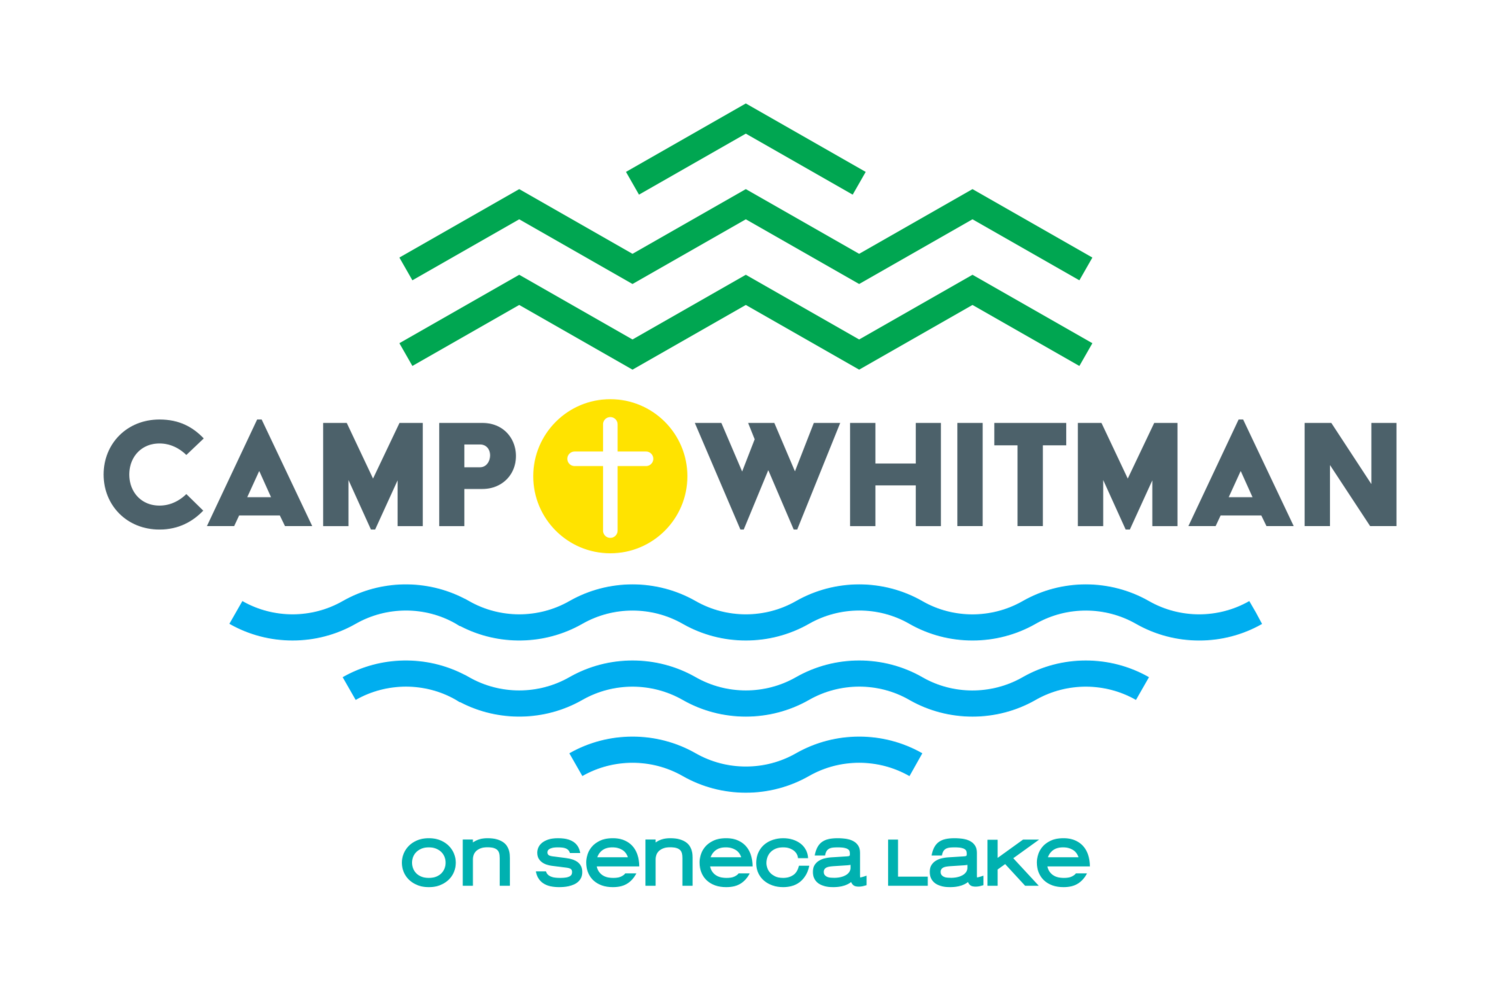 Camp Whitman on Seneca Lake